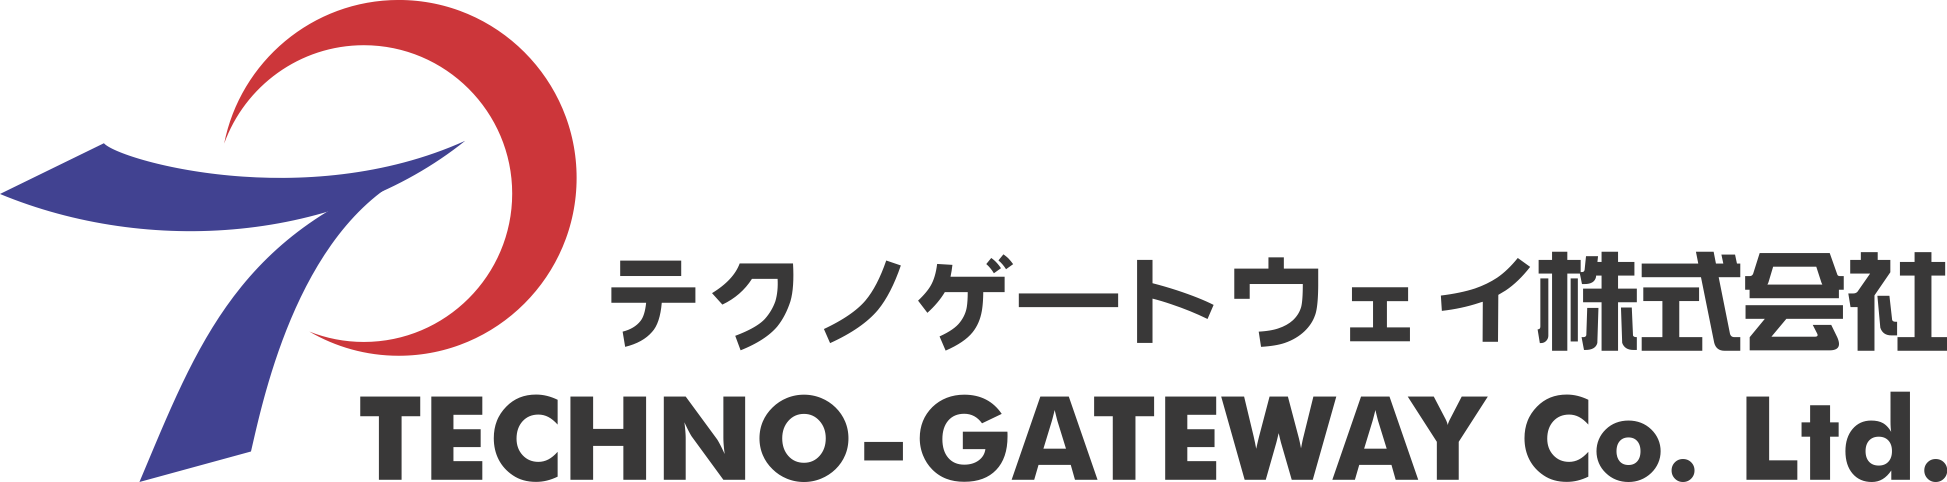 Techno-Gateway Co. Ltd.